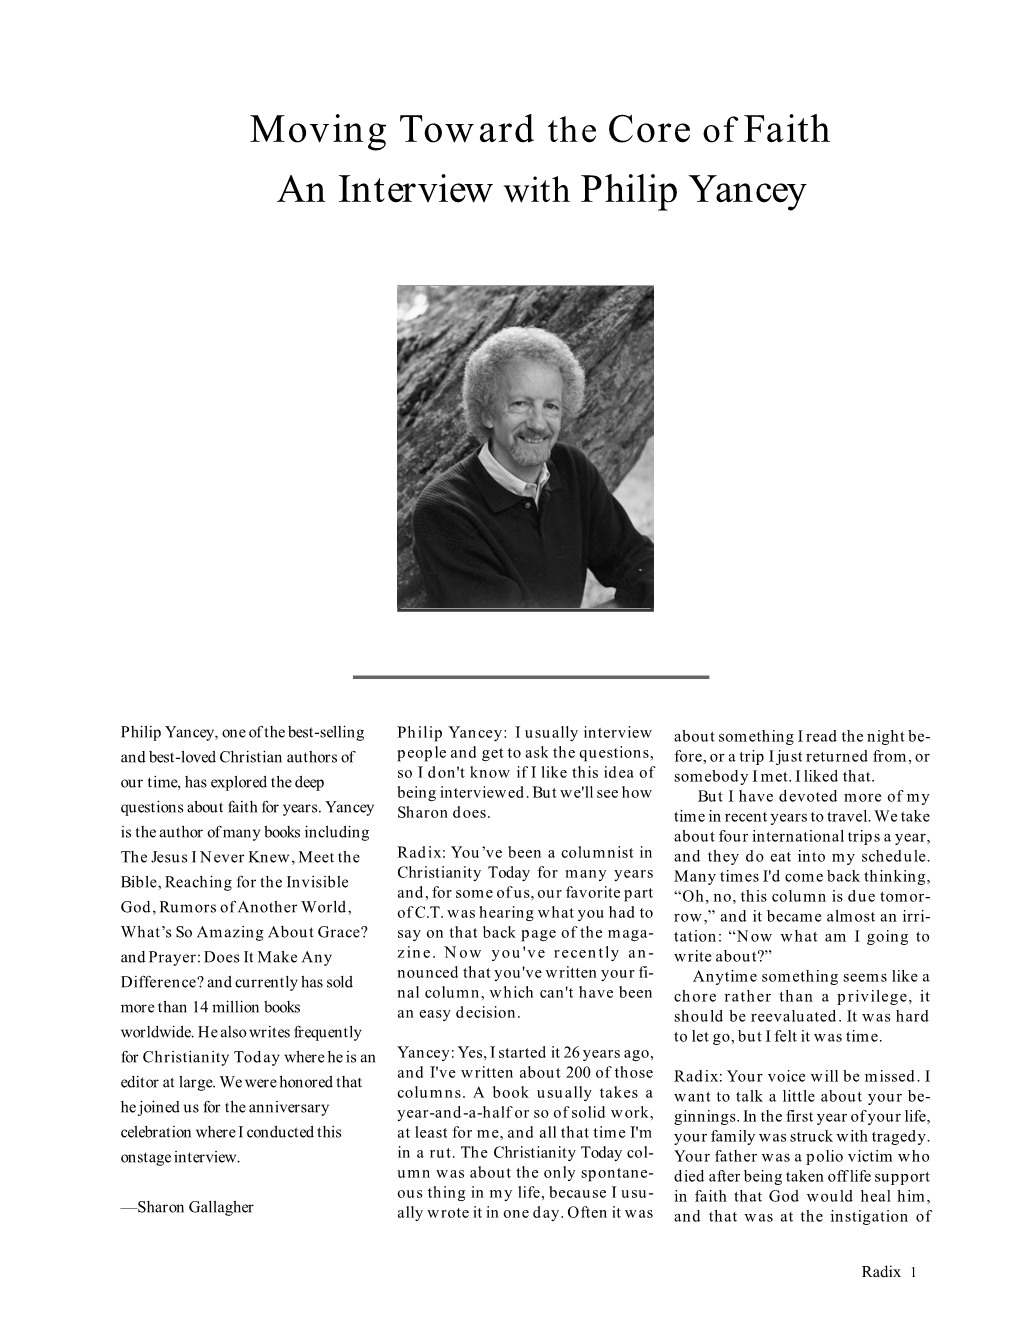 Philip Yancey Interview